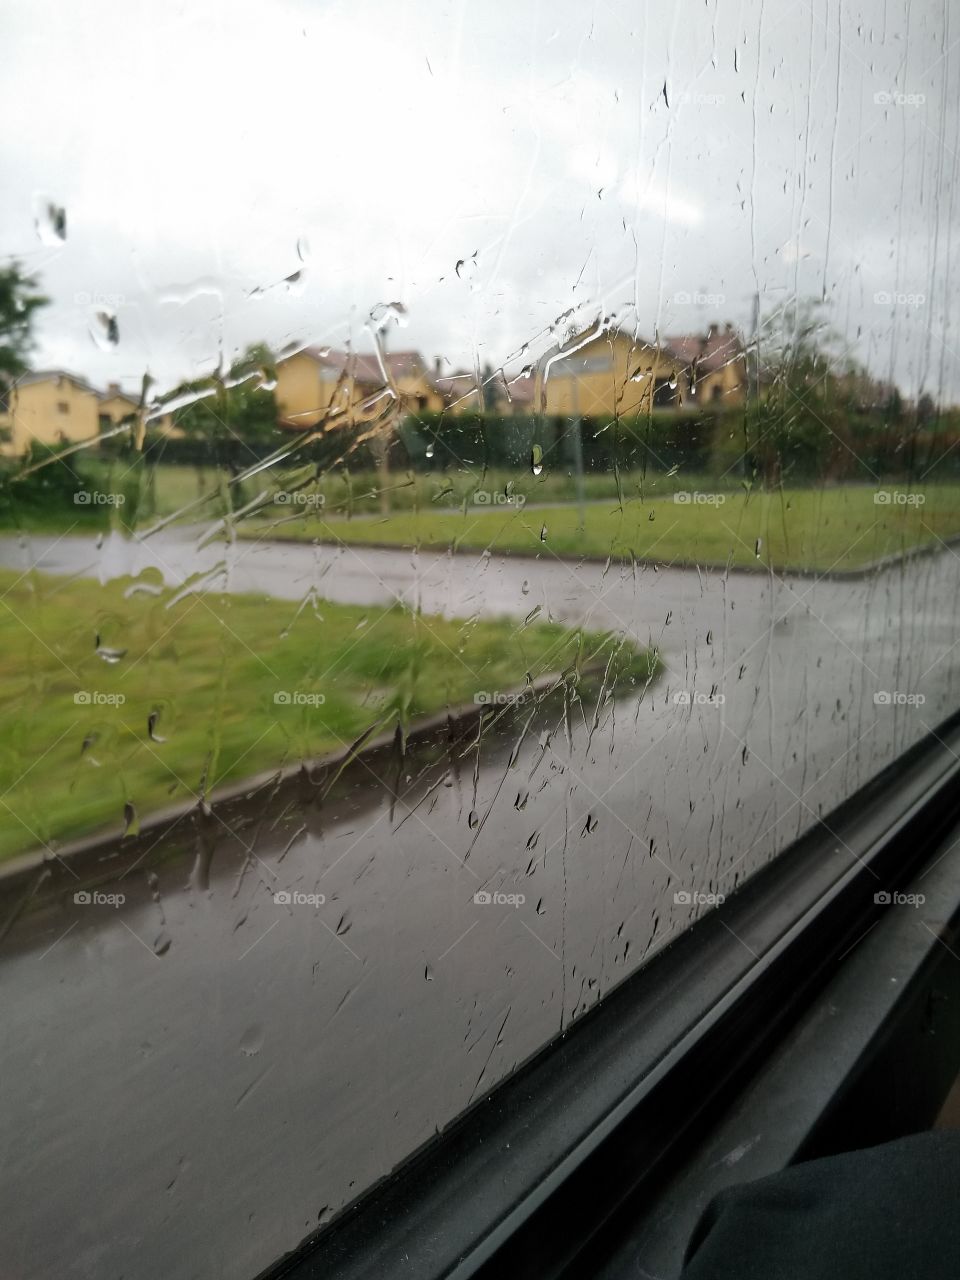 A rain day